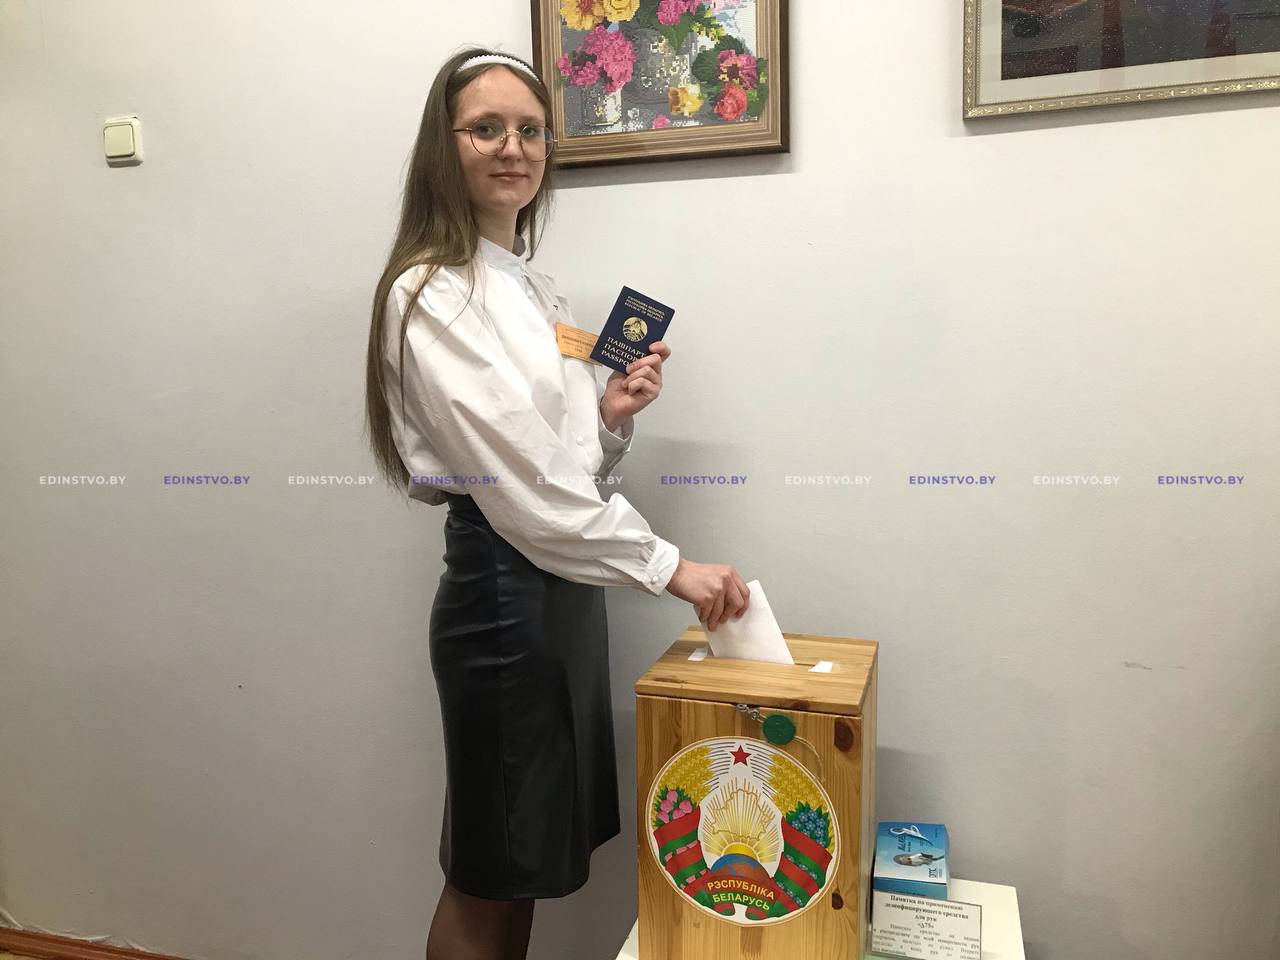 Молодежь Борисовщины делает выбор. Учащаяся БГК проголосовала в день своего совершеннолетия